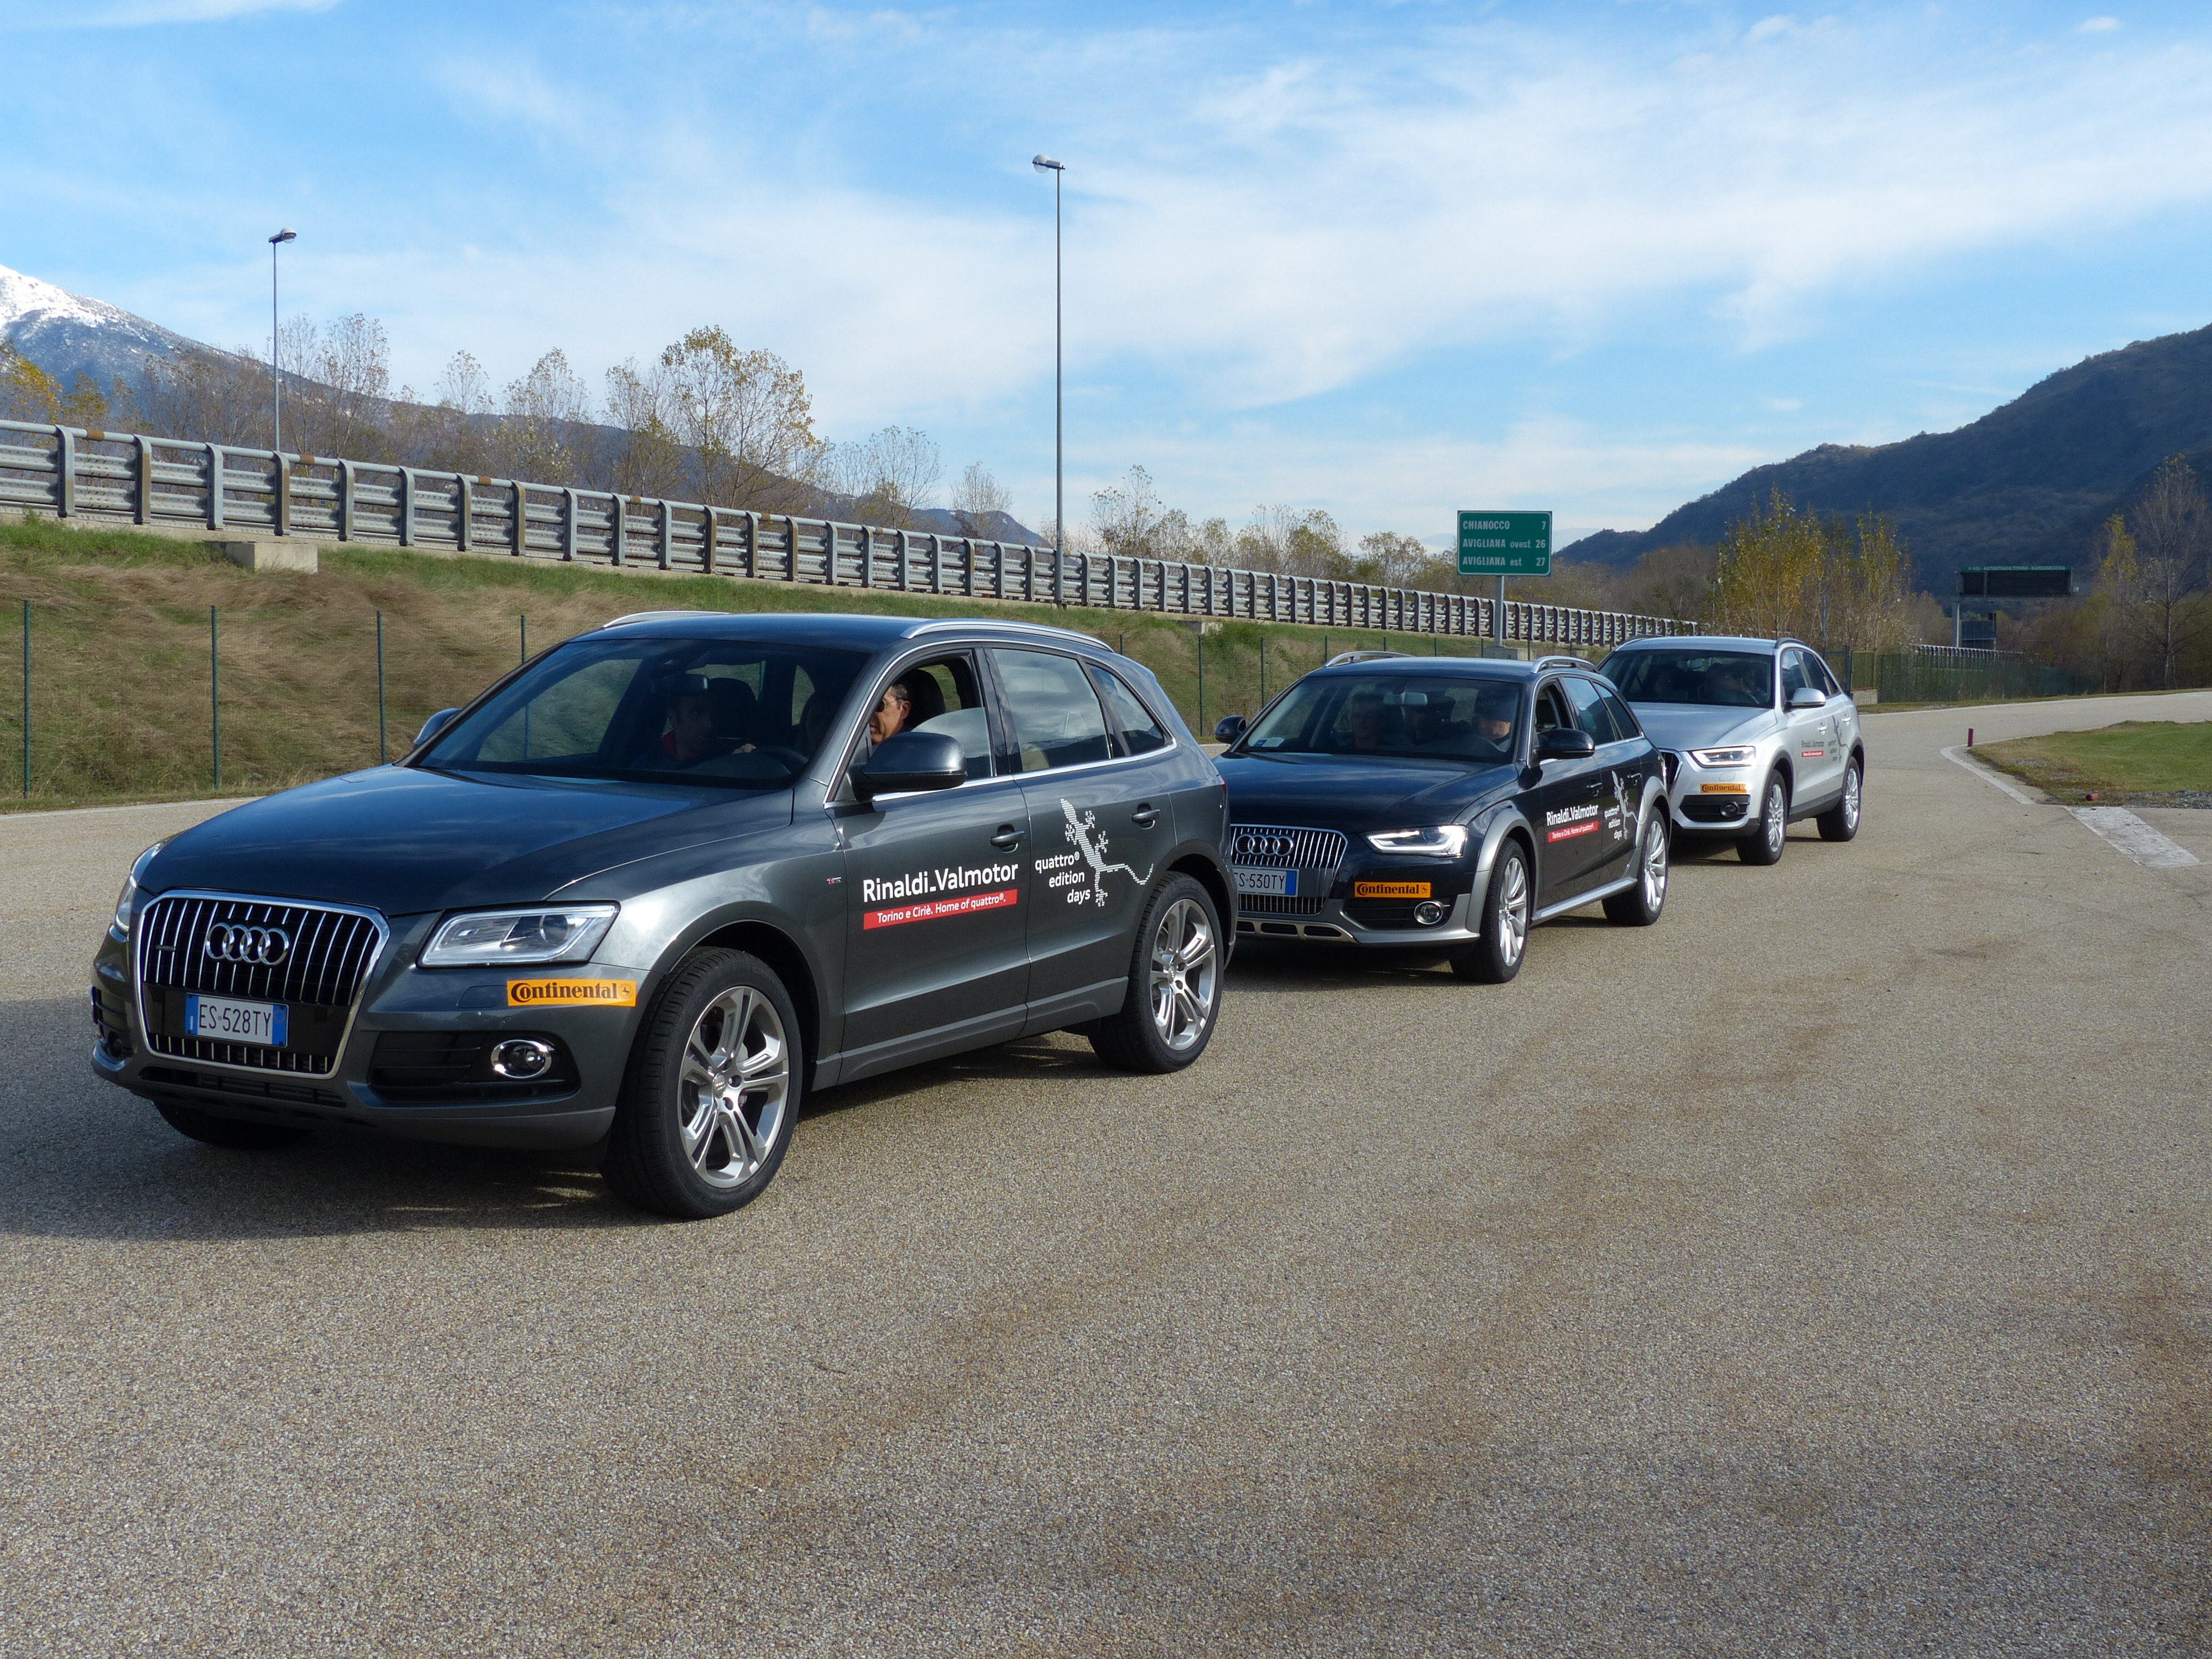 Le auto della terza prova: Audi Q5 2.0 TDI Quattro S-Tronic, un Q3 2.0 TDI Quattro S-Tronic ed una A4 allora 2.0 TDI Quattro S-Tronic.